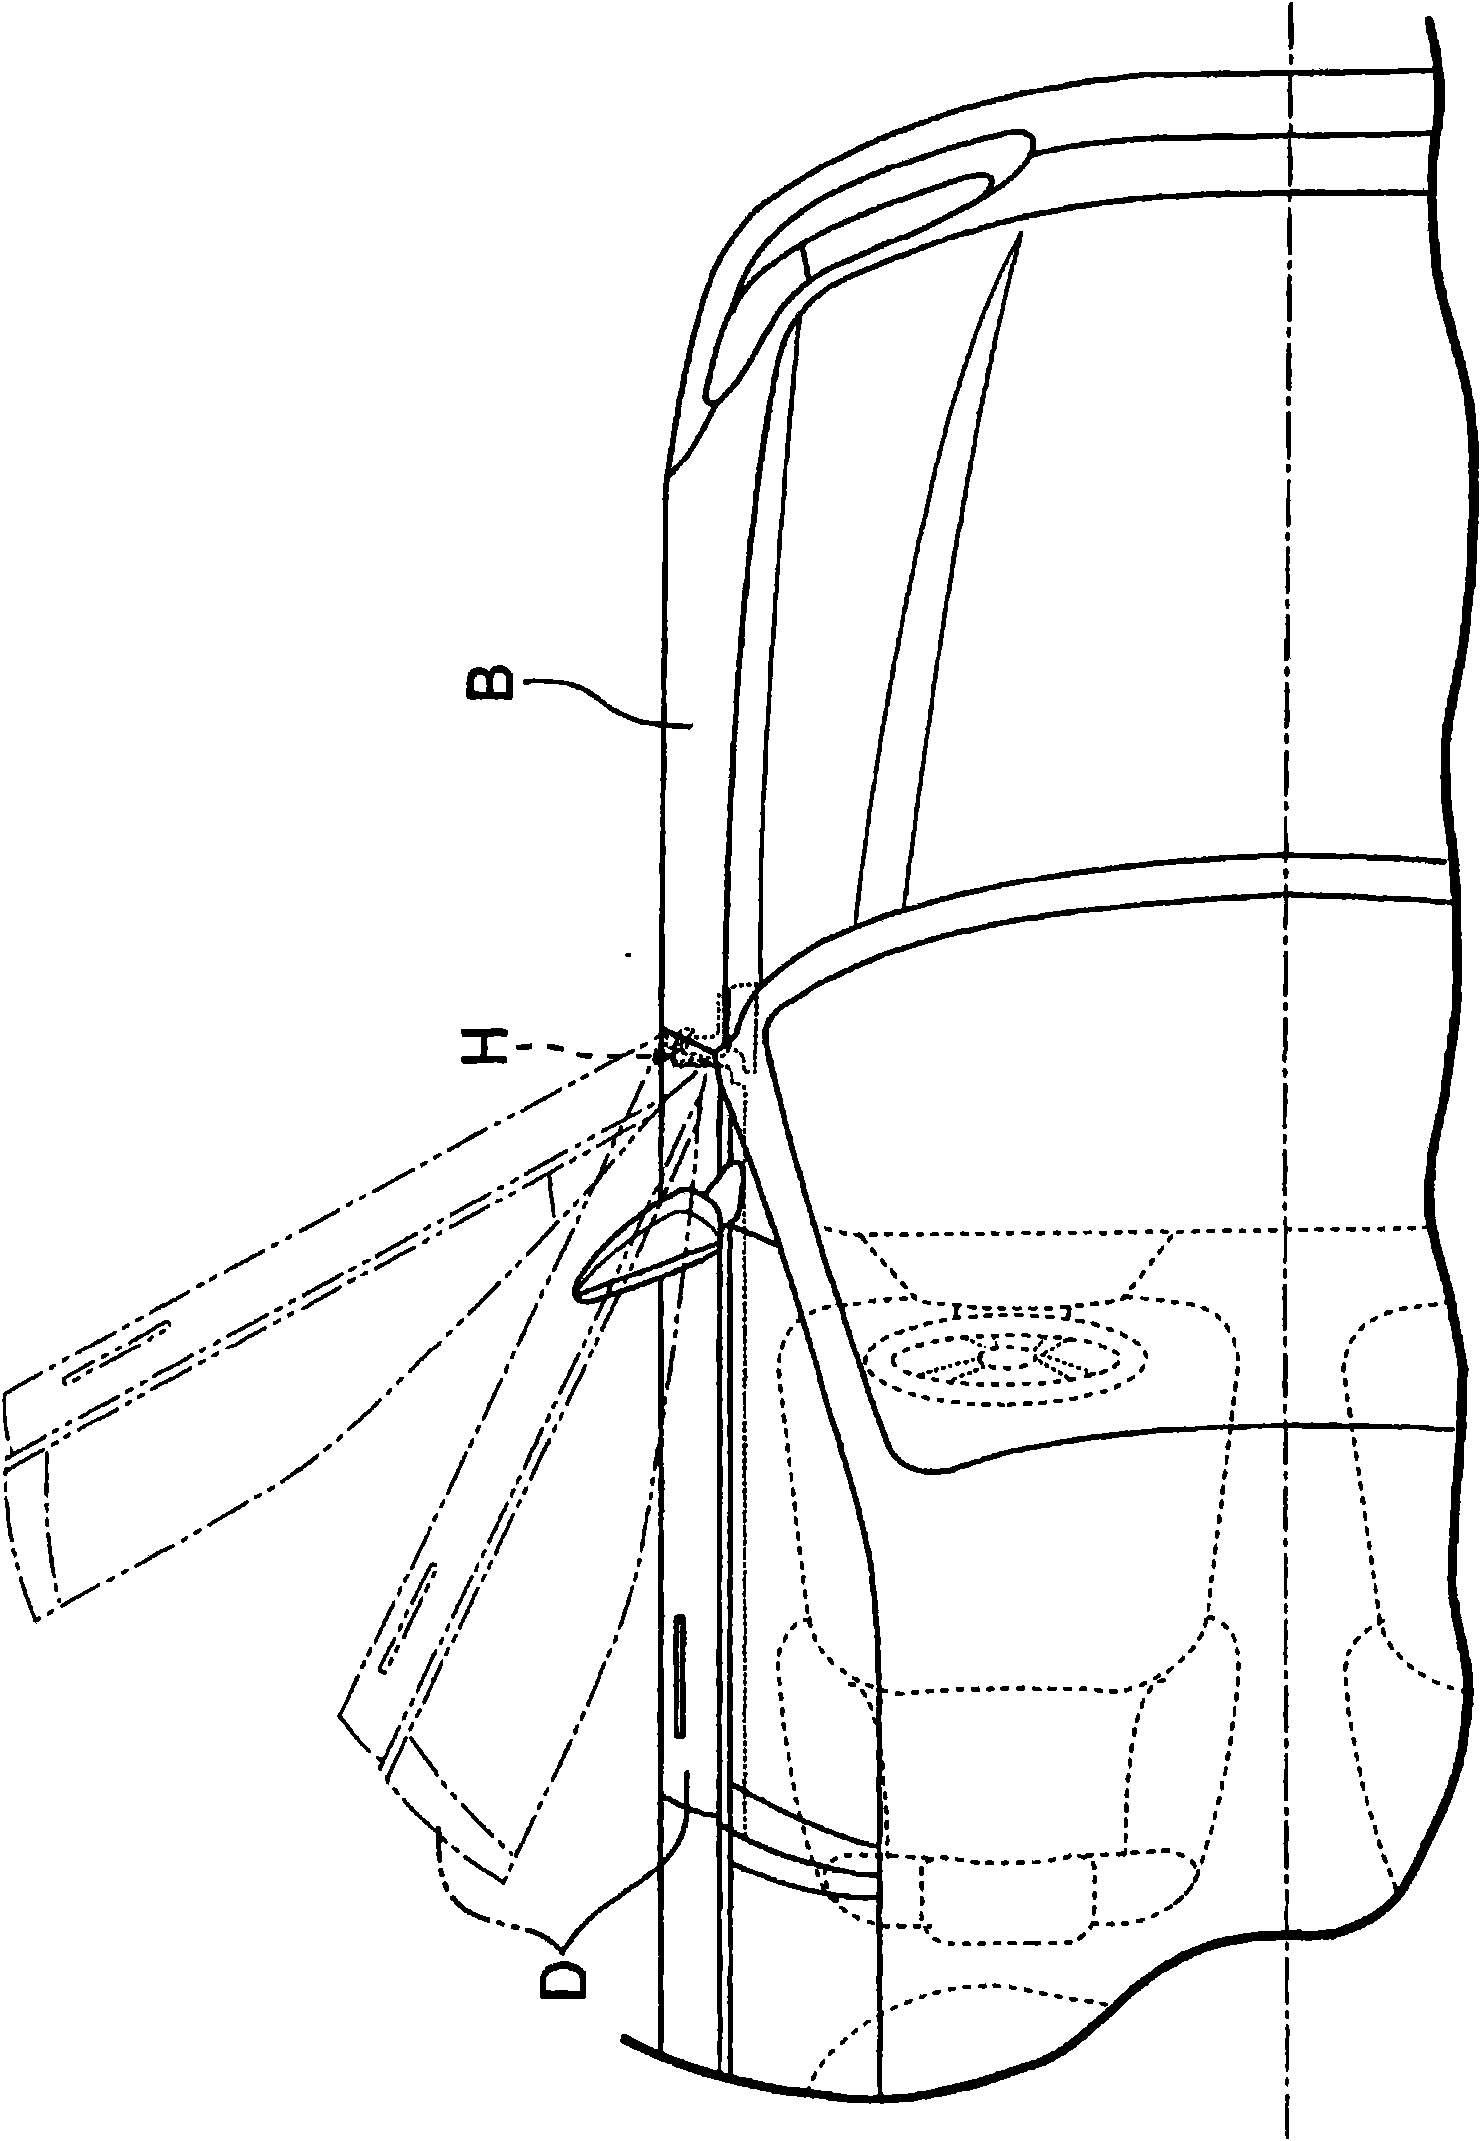 Vehicular door-hinge device with checker